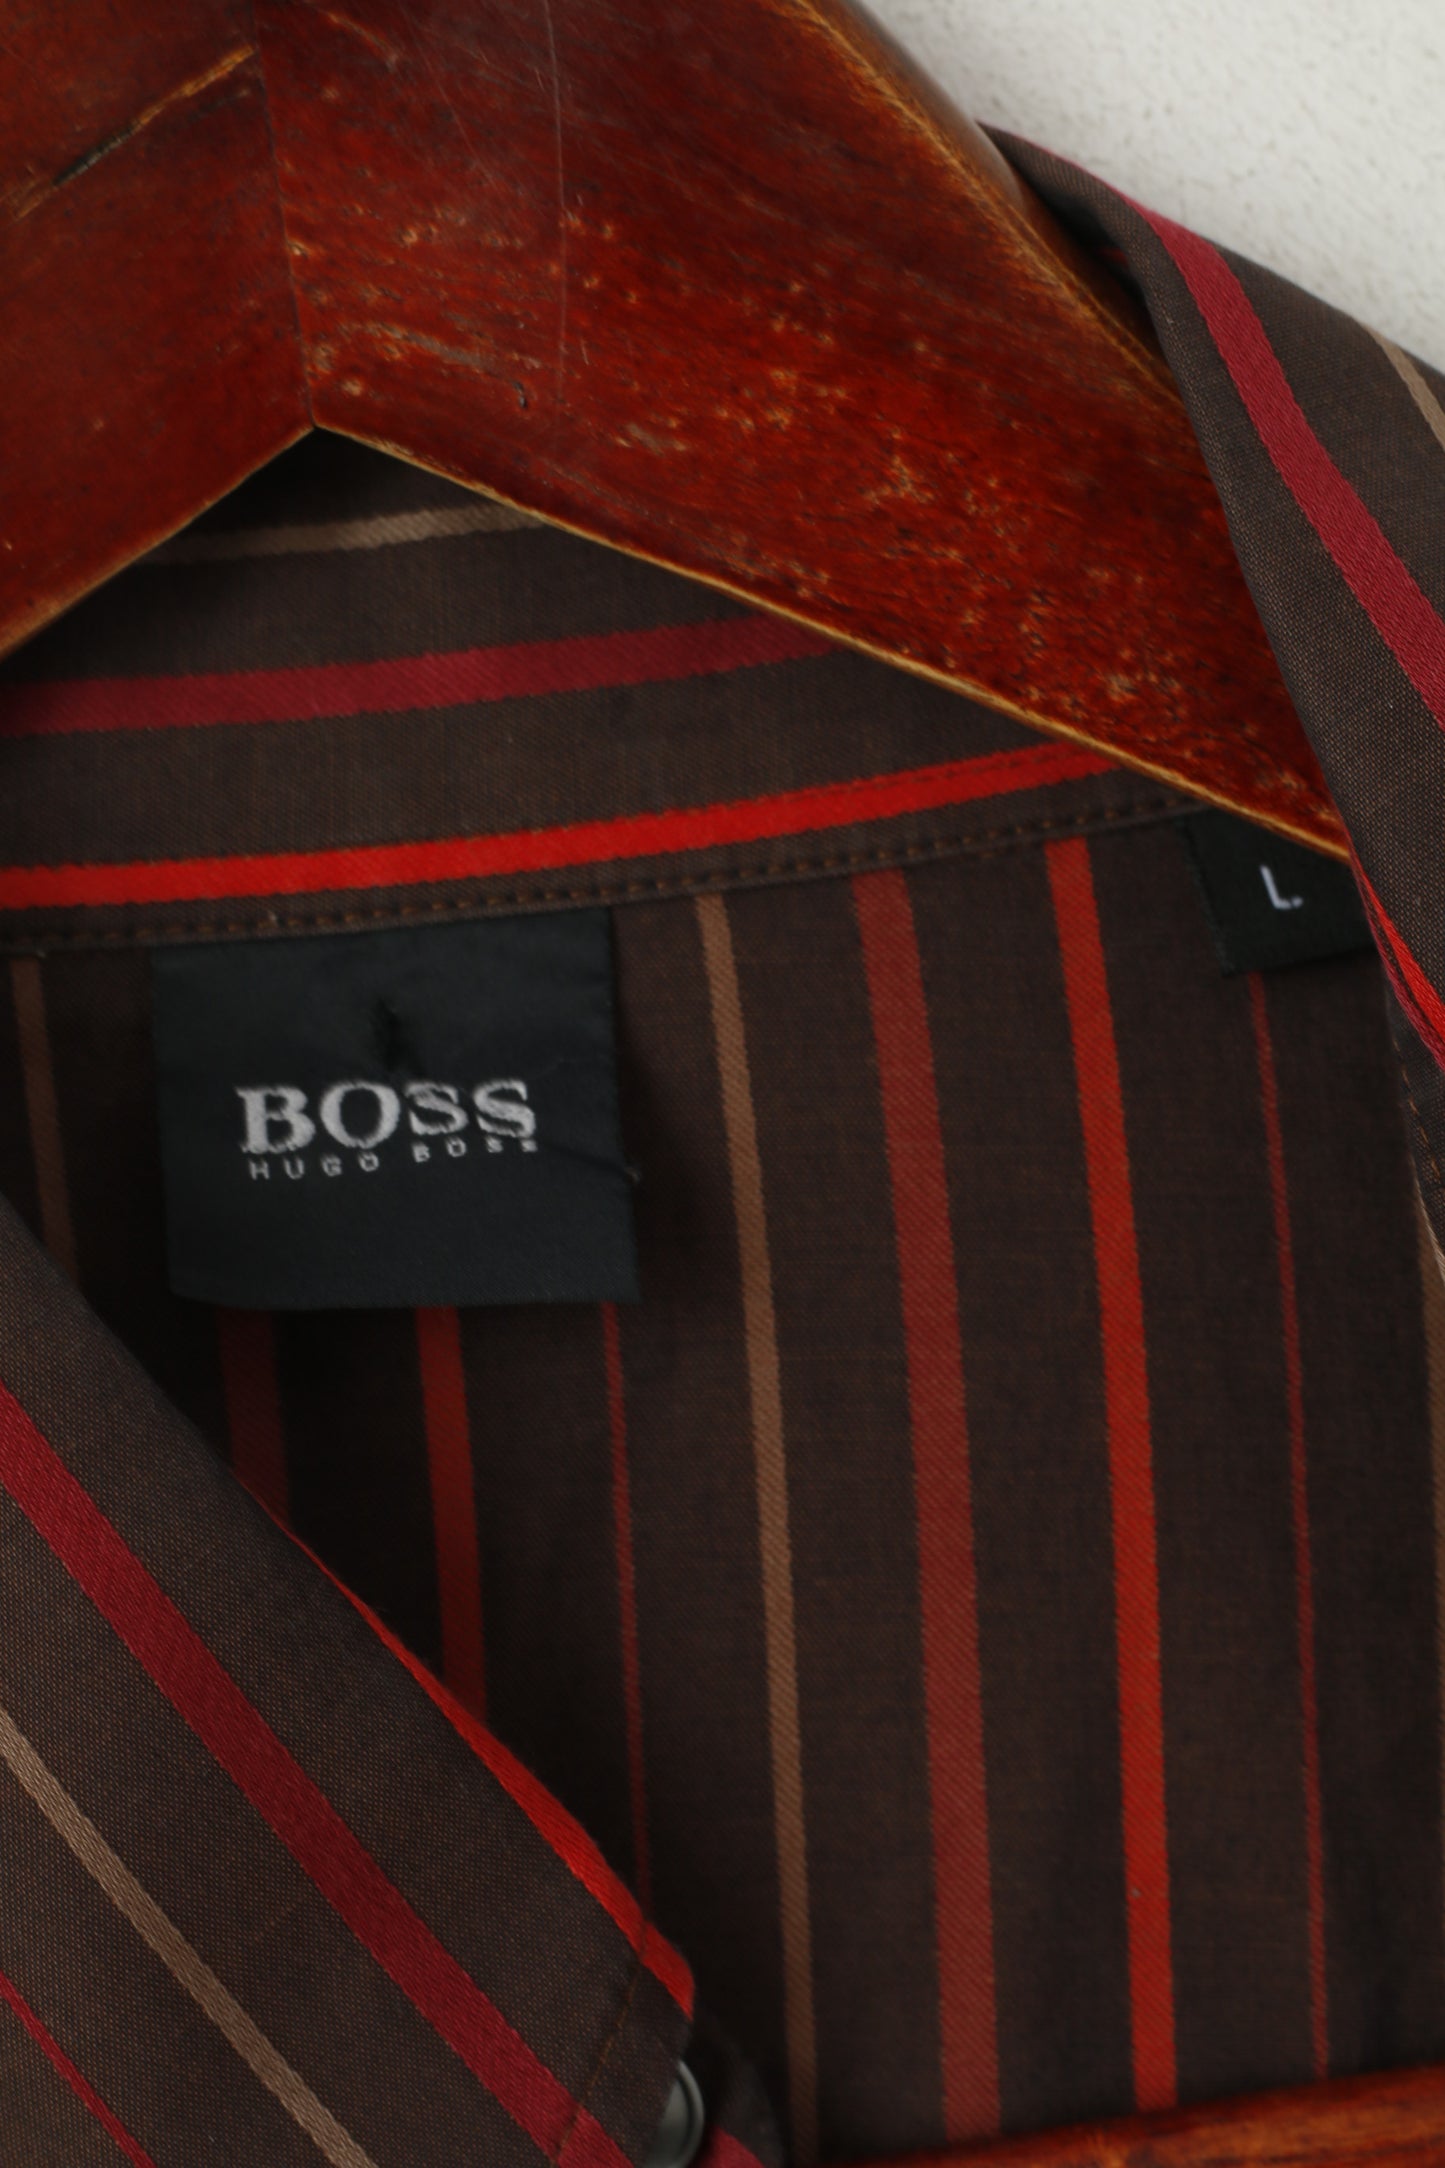 Hugo Boss Men L Casual Shirt Brown Striped Cotton Long Sleeve Cufflinks Top